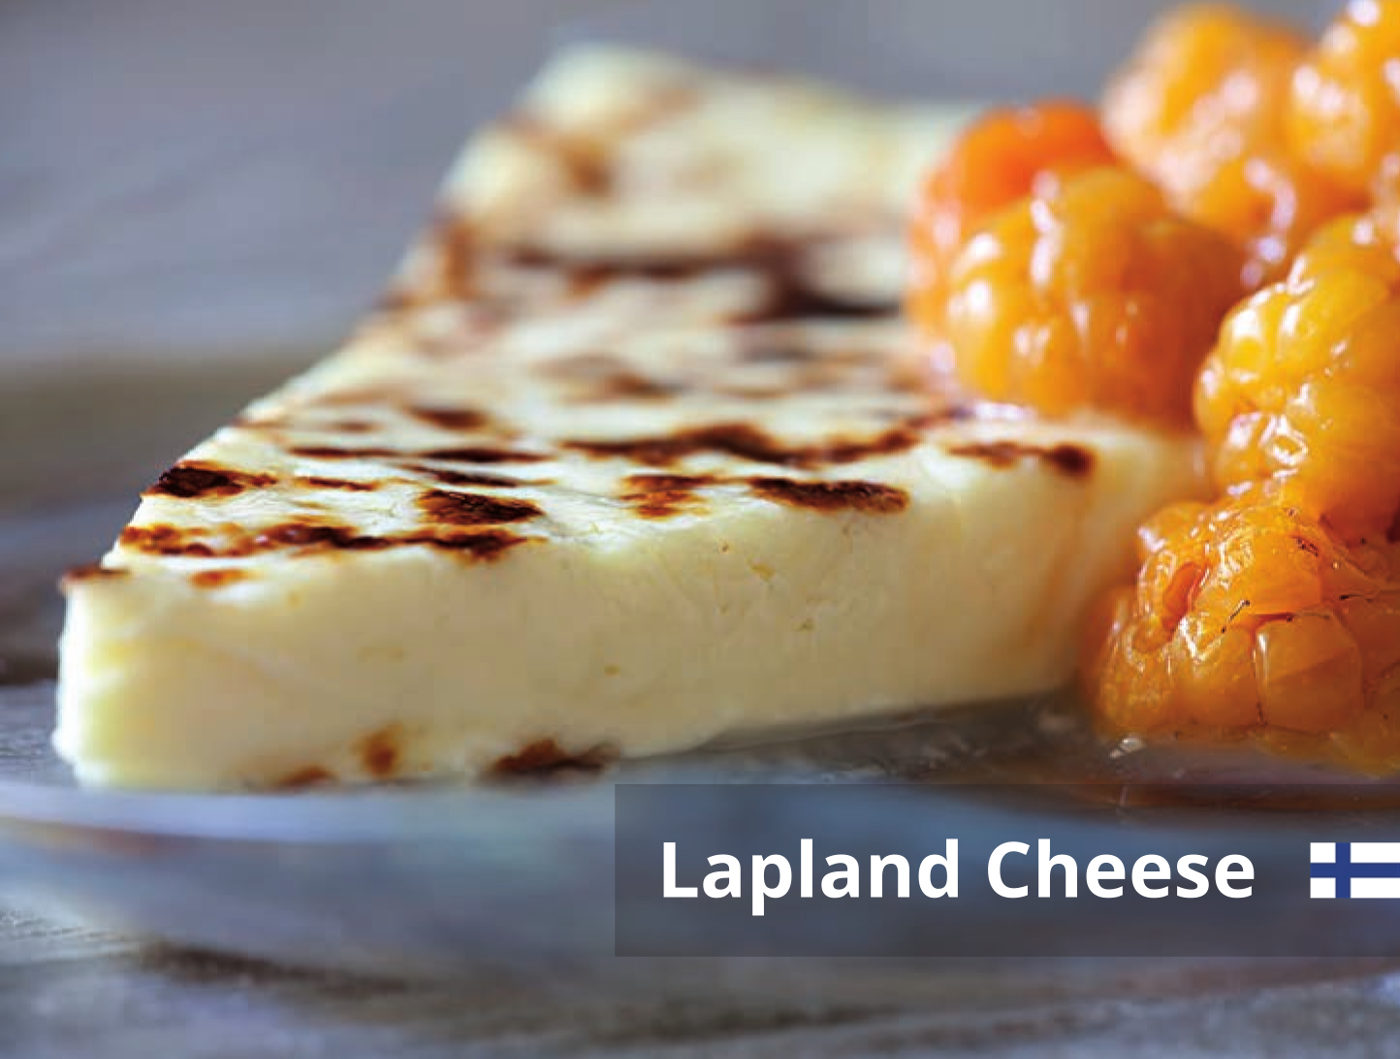 Lapland Cheese